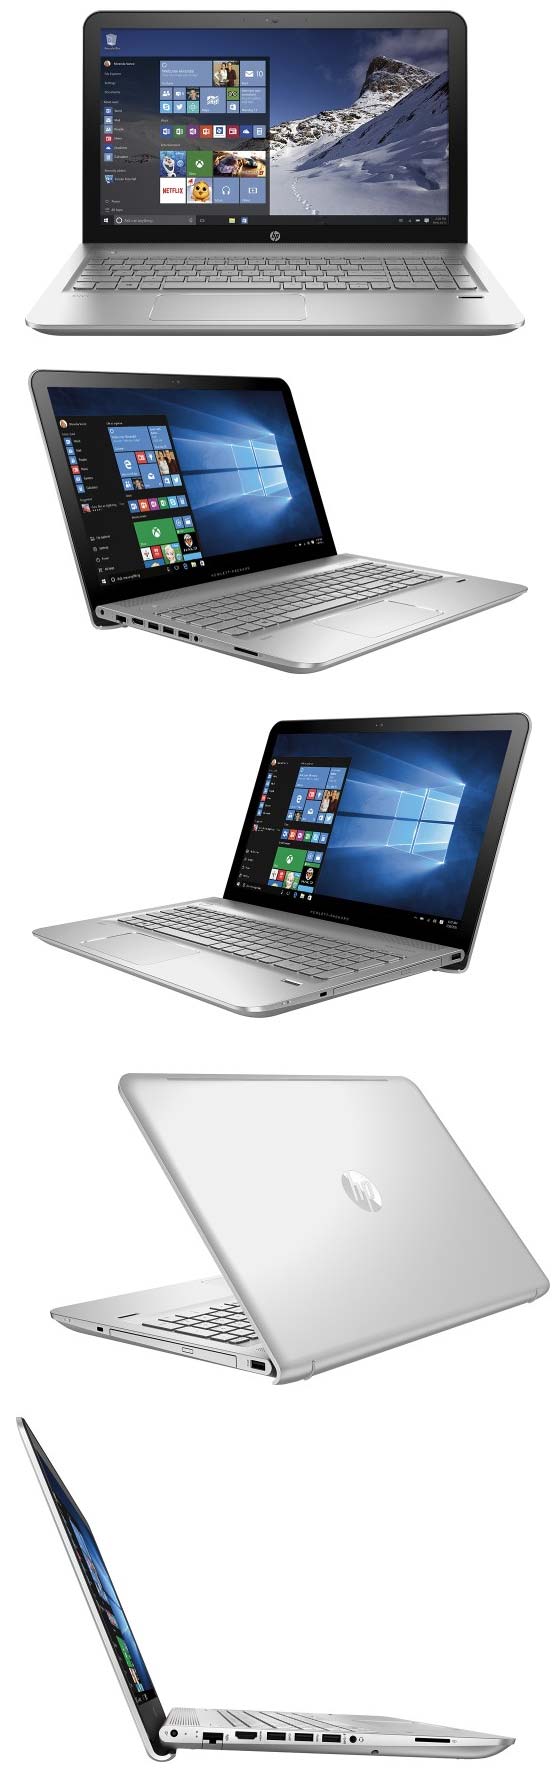 На фото показан ноутбук HP Envy m6-p113dx